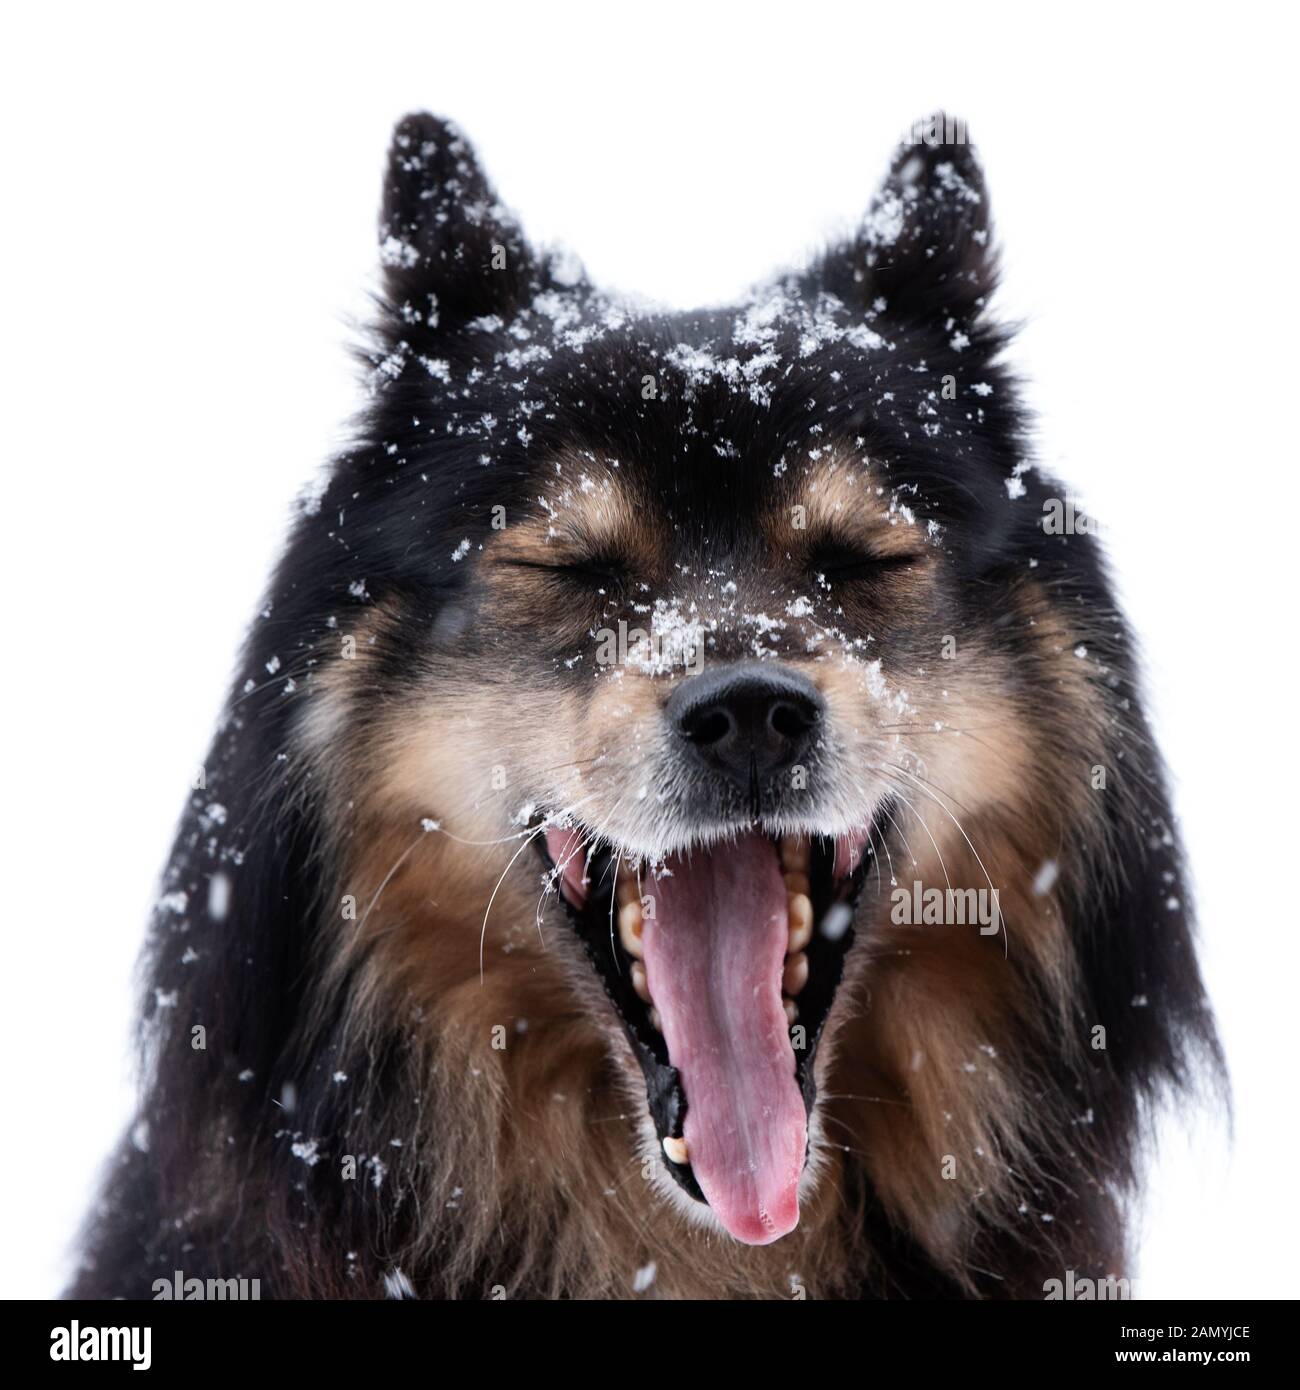 Lapphund finlandese in nevicata e sbadigli, testa rivolta verso la fotocamera con la bocca aperta e gli occhi chiusi contro uno sfondo bianco. Foto Stock